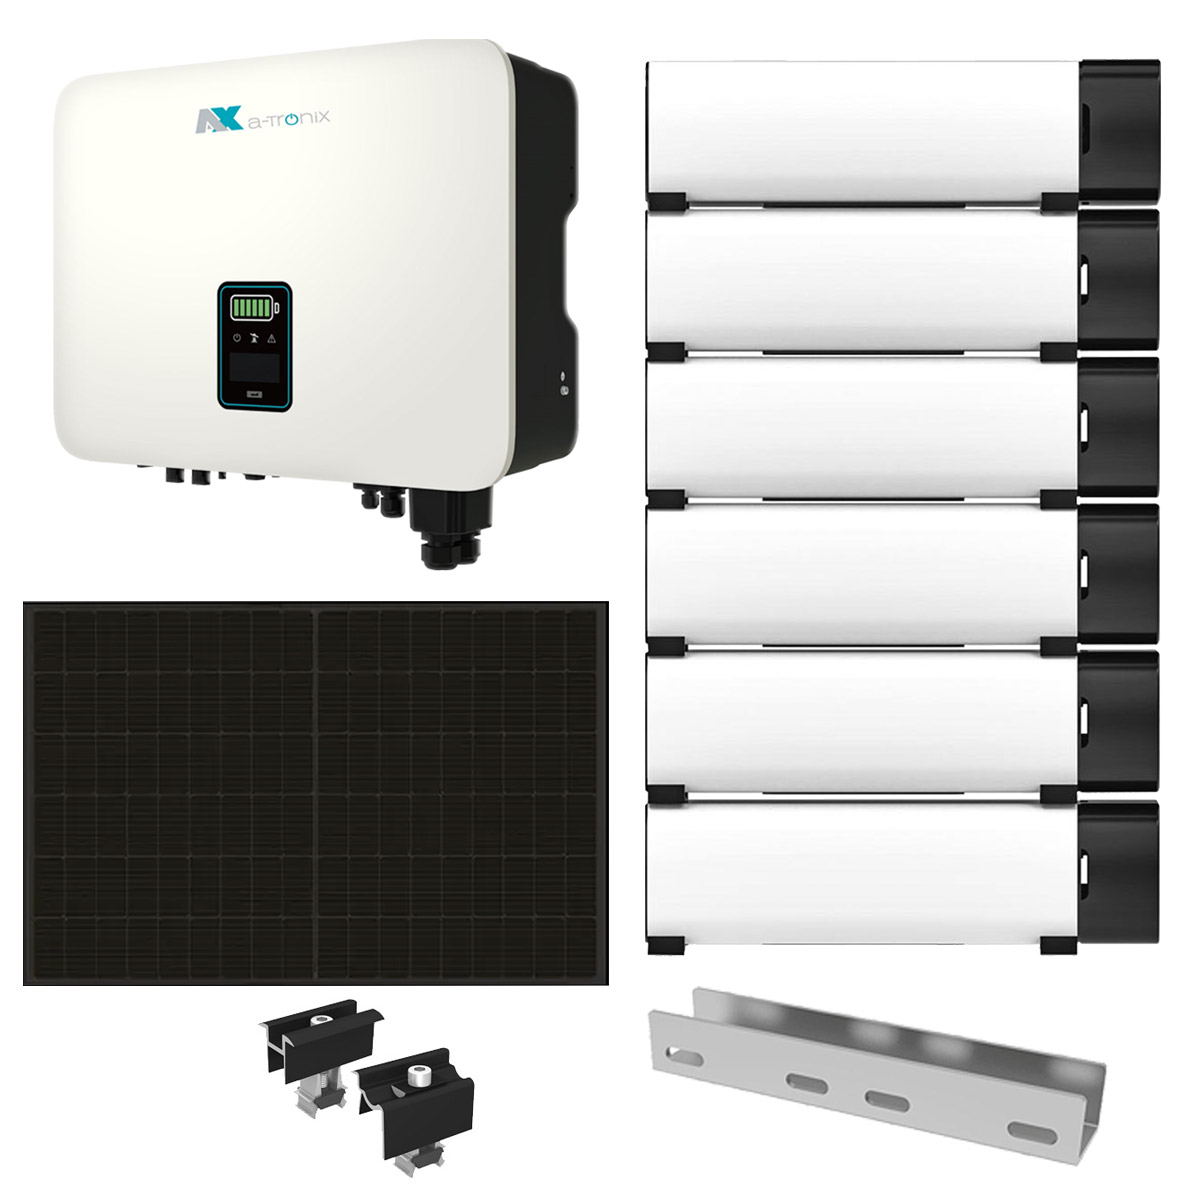 a-TroniX 10kWp PV Komplettanlage mit Solarmodulen und 11,5kWh Speicher